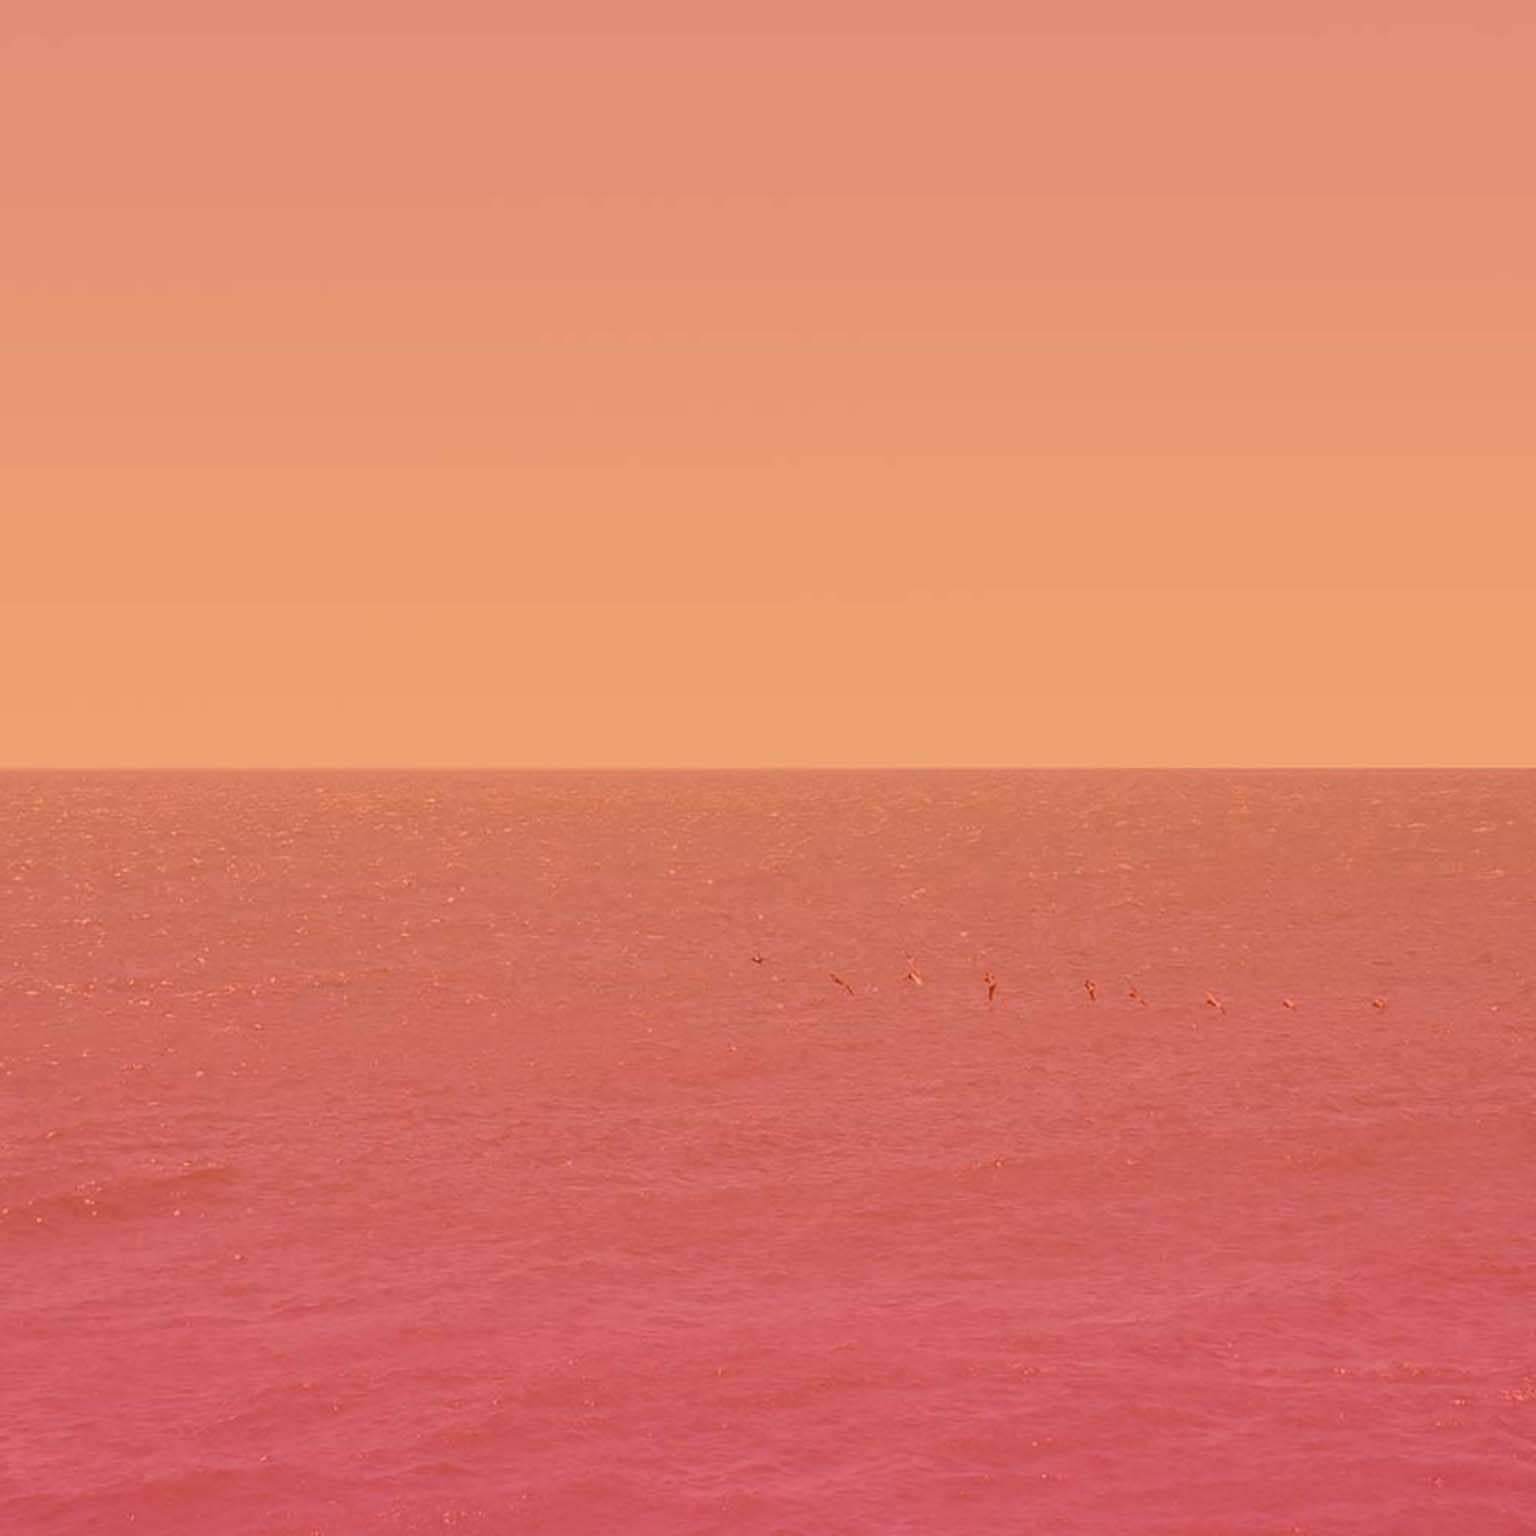 Horizon #10